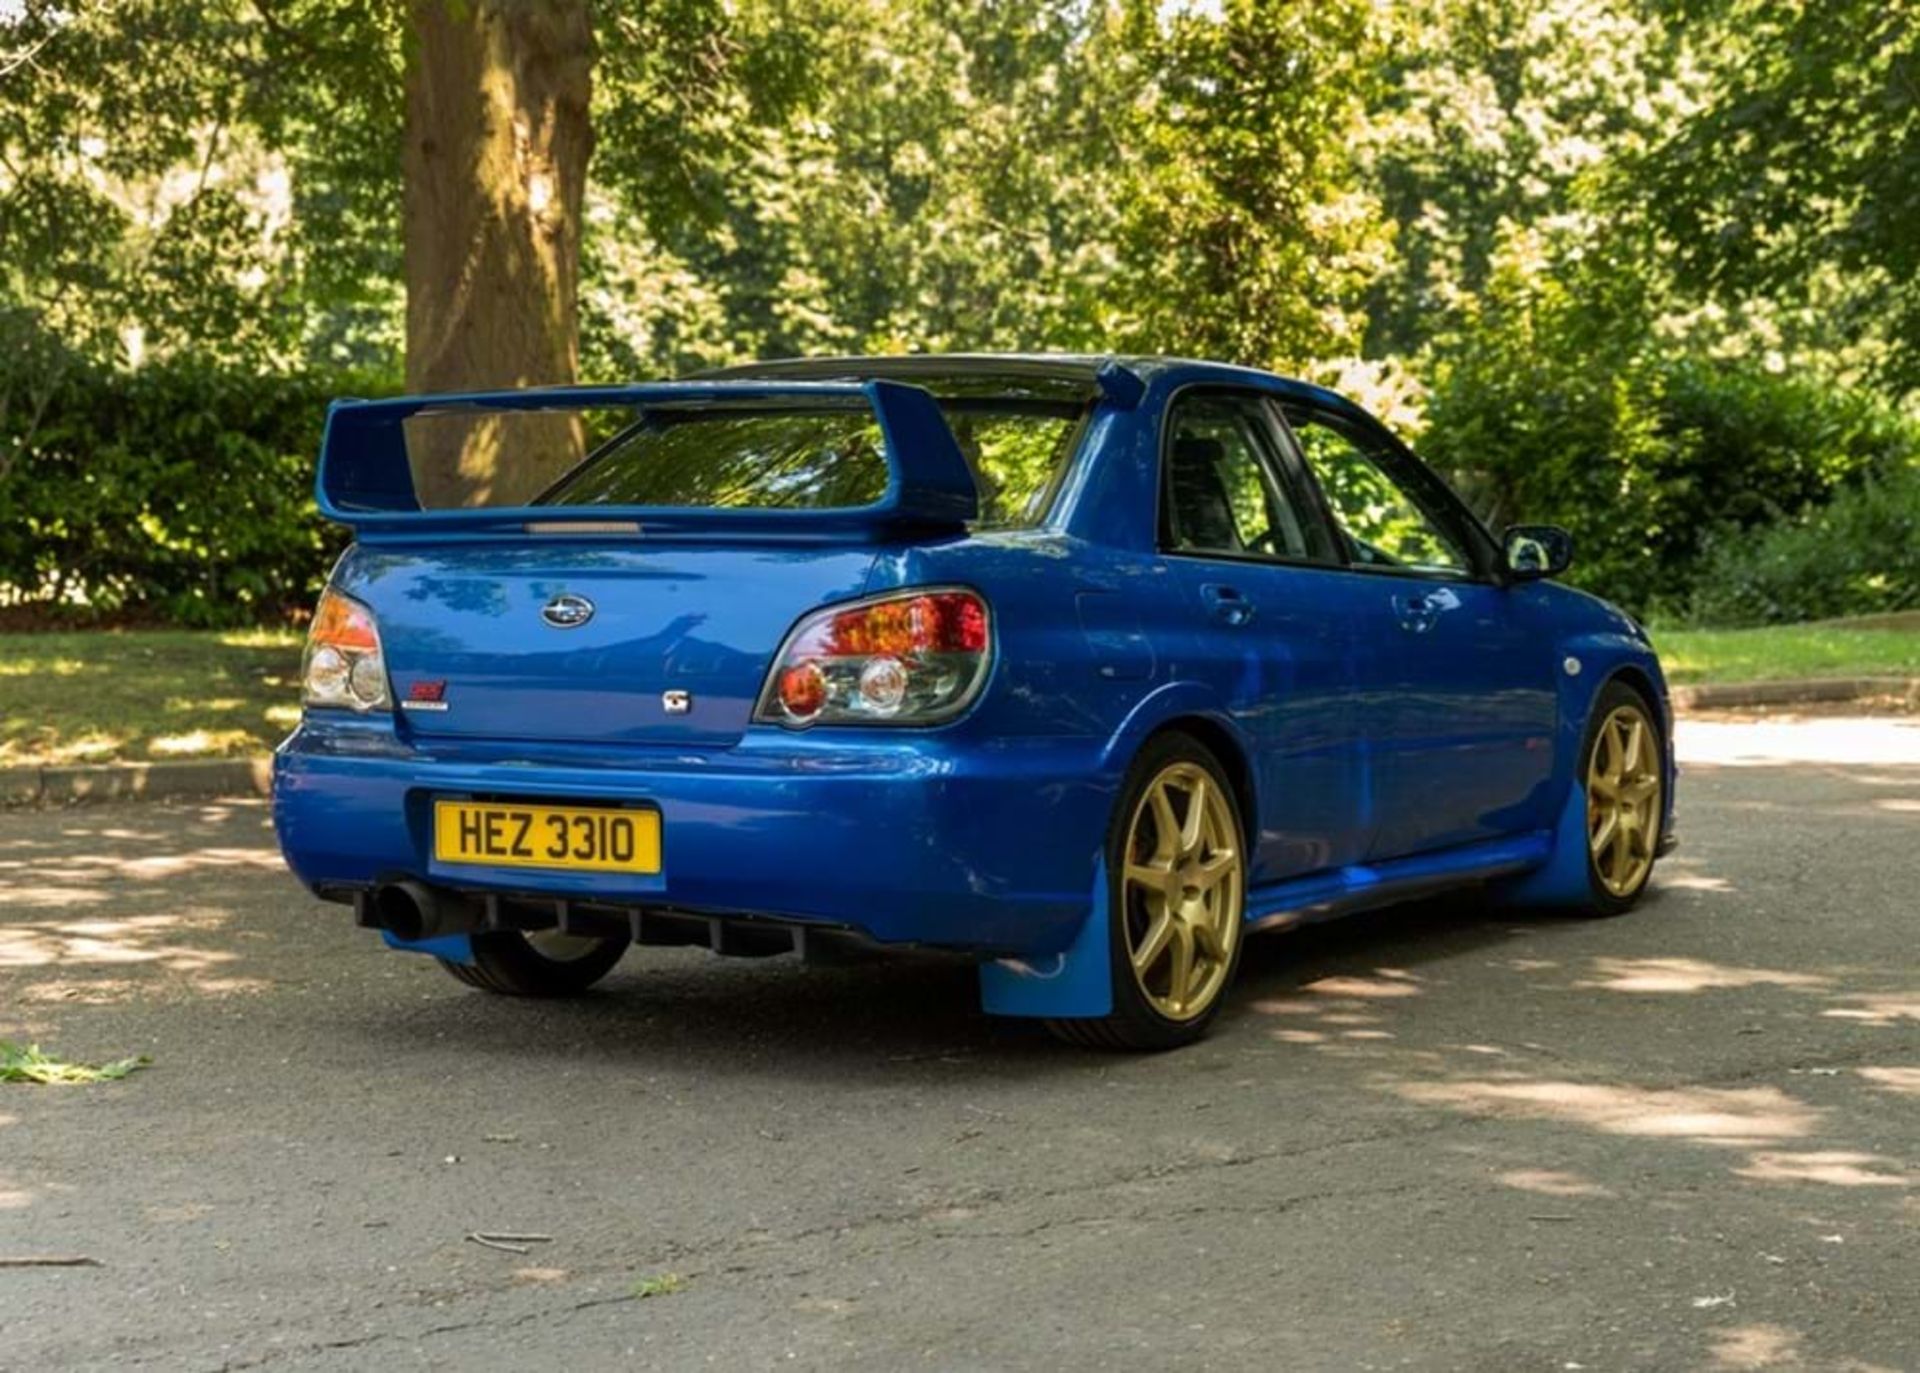 2006 Subaru Imprezza WRX STi - Image 2 of 8